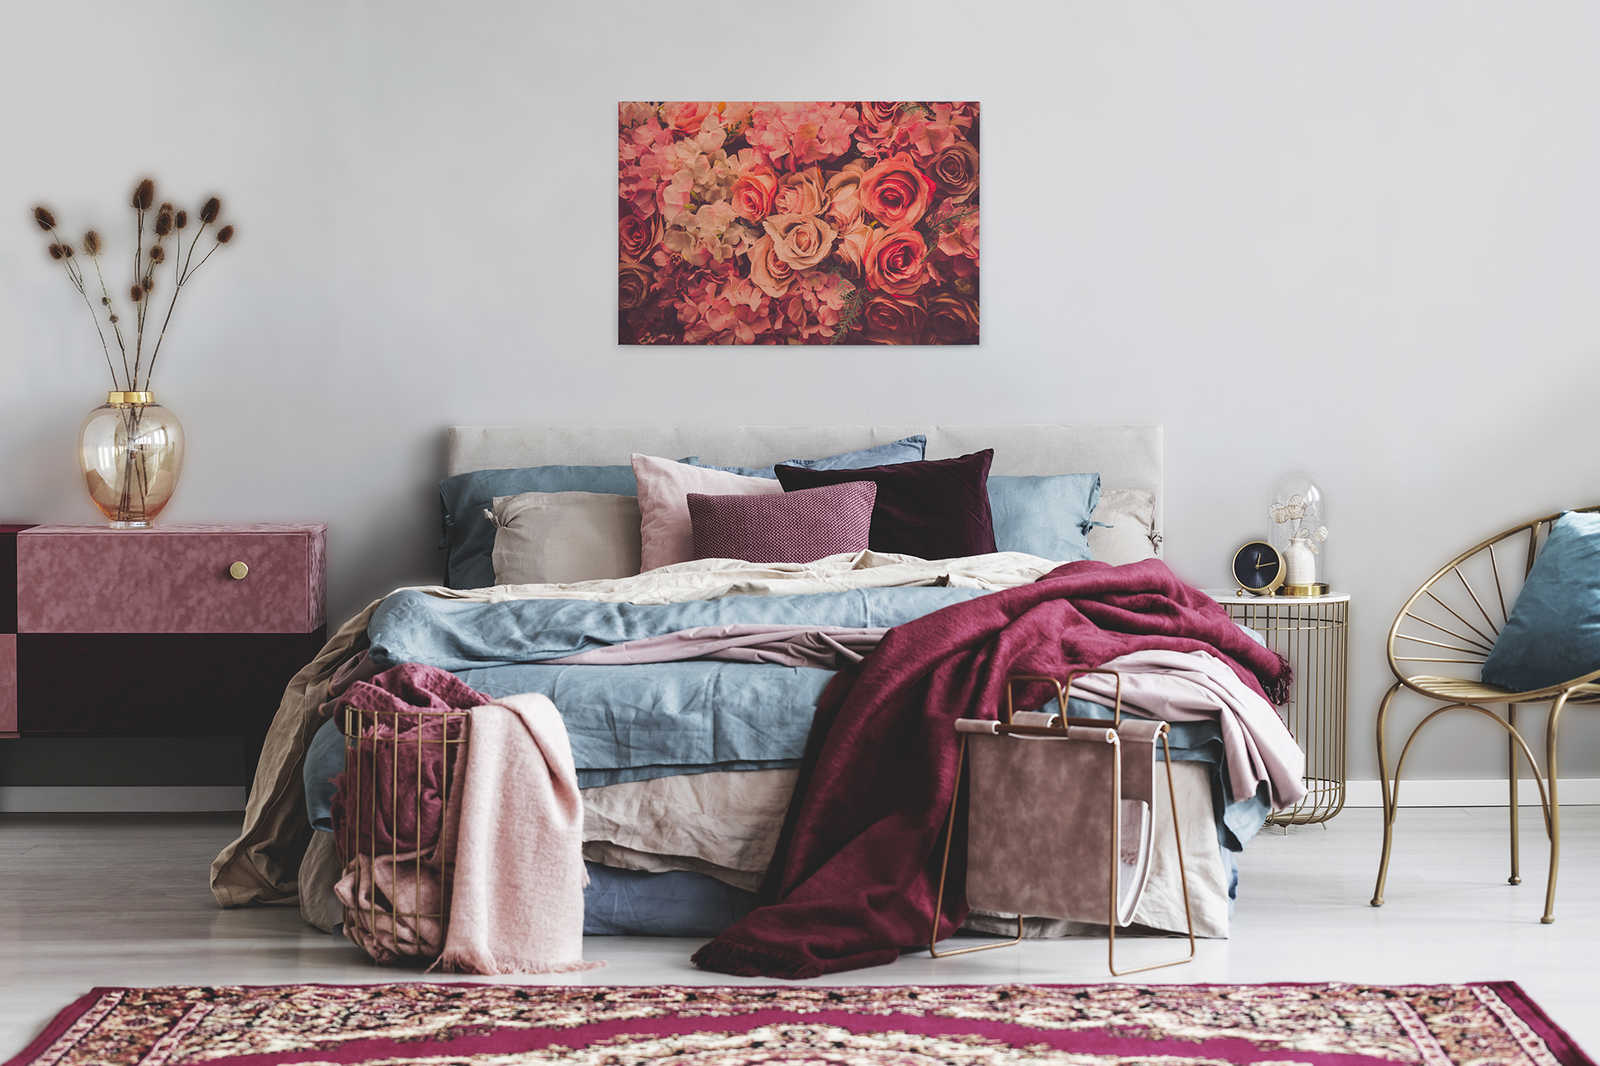             Canvas met romantisch rozenmotief in linnenlook - 0,90 m x 0,60 m
        